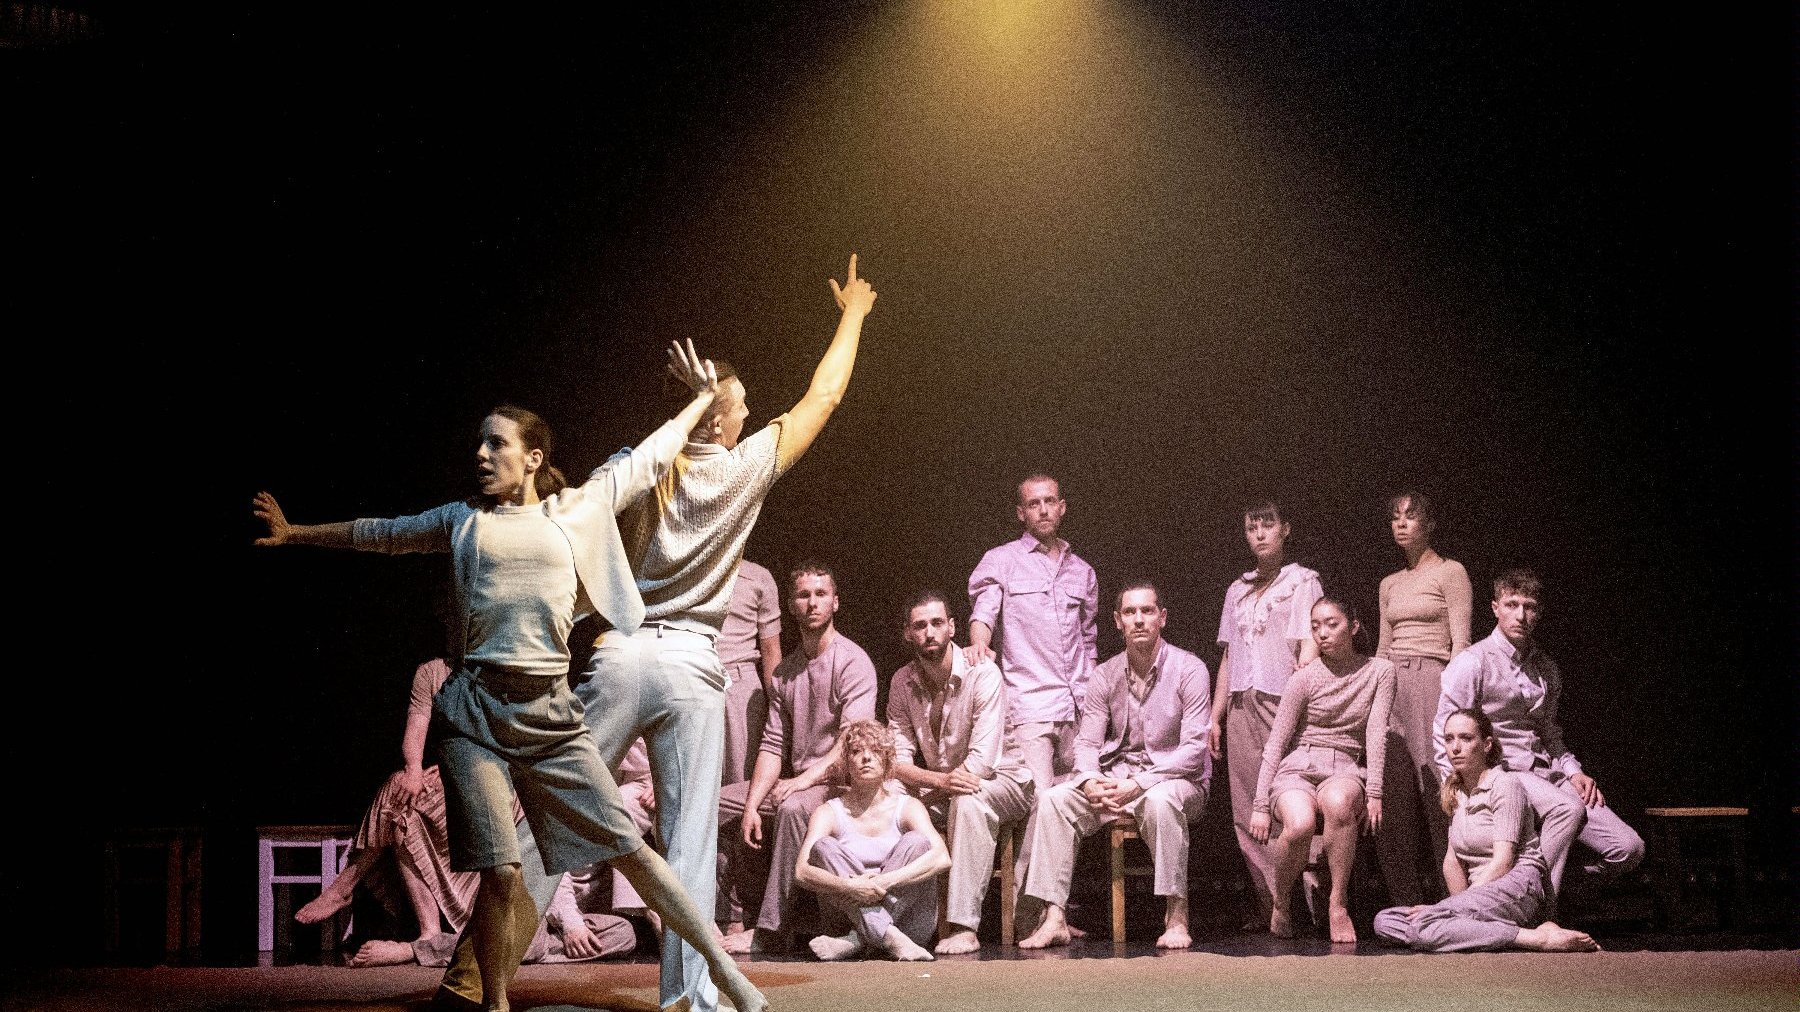 Mężczyzna i kobieta tańczą na środku sceny, inni tancerze siedzą przyglądając się im. Z góry oświetla ich lampa.